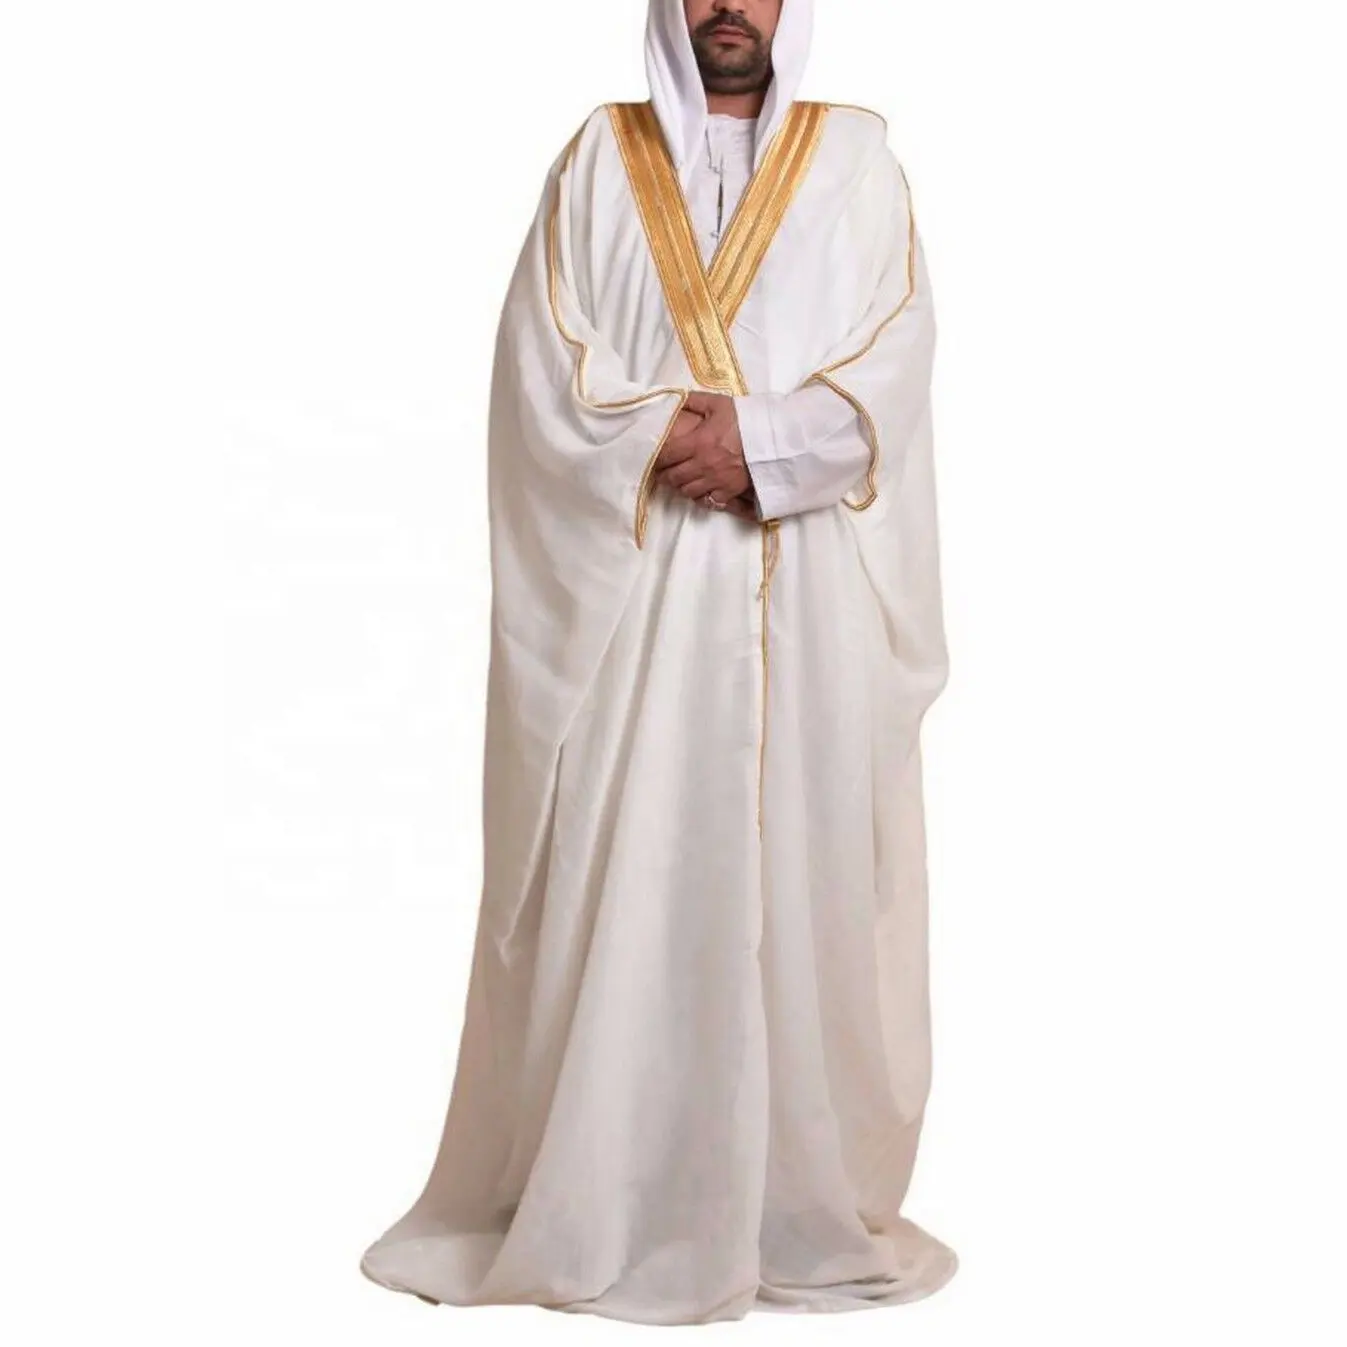 カスタム高品質イスラムイスラム教徒ドバイ男性アバヤイードアラブトーブサウジ男性ローブ